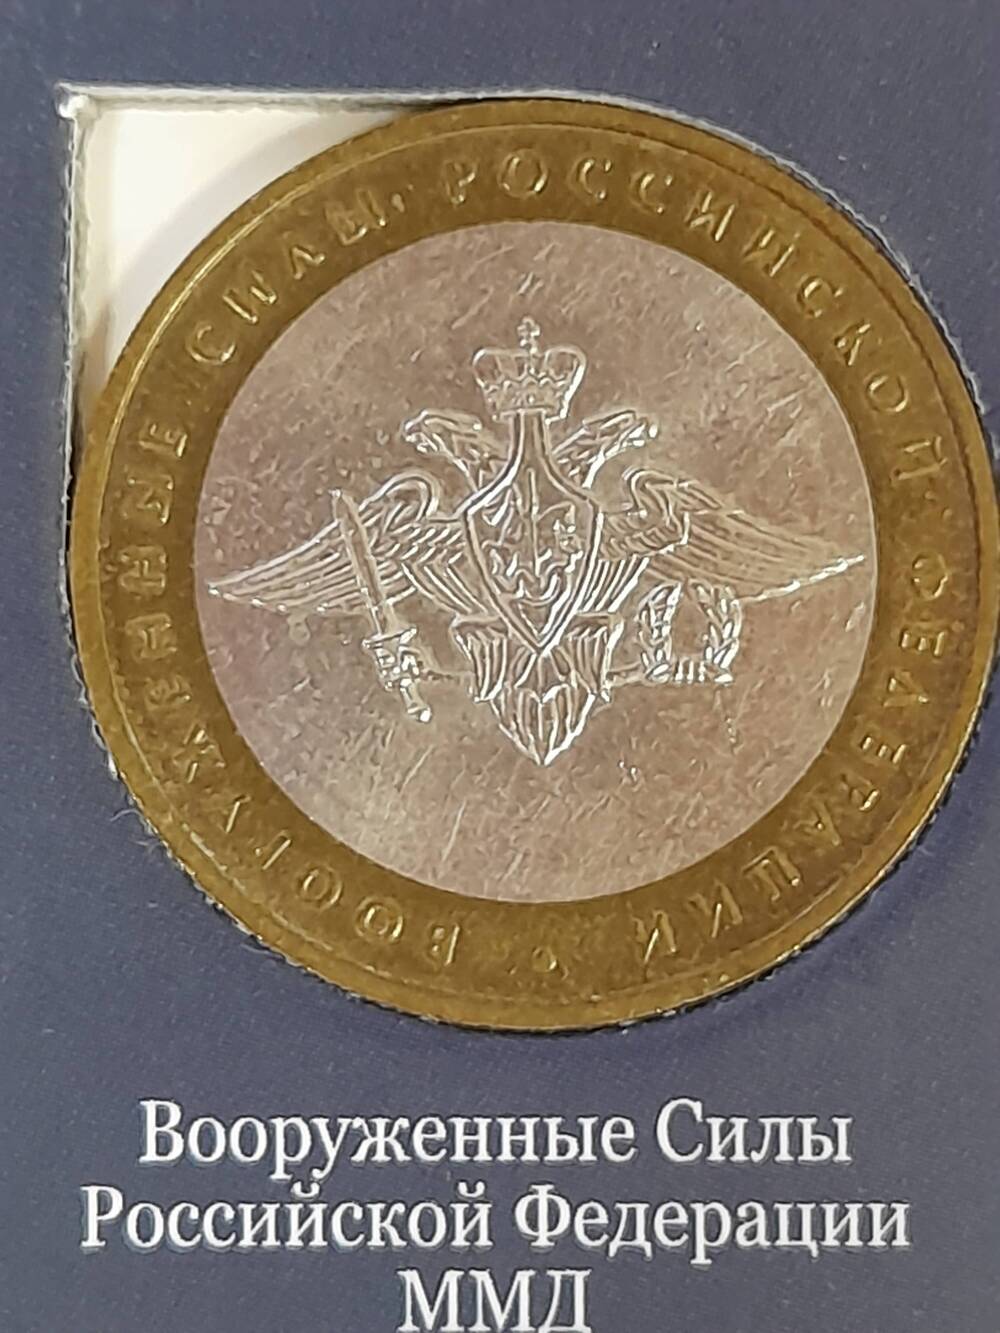 Монета памятная 10 РУБЛЕЙ. Вооруженные силы Российской Федерации 2002 г. Россия